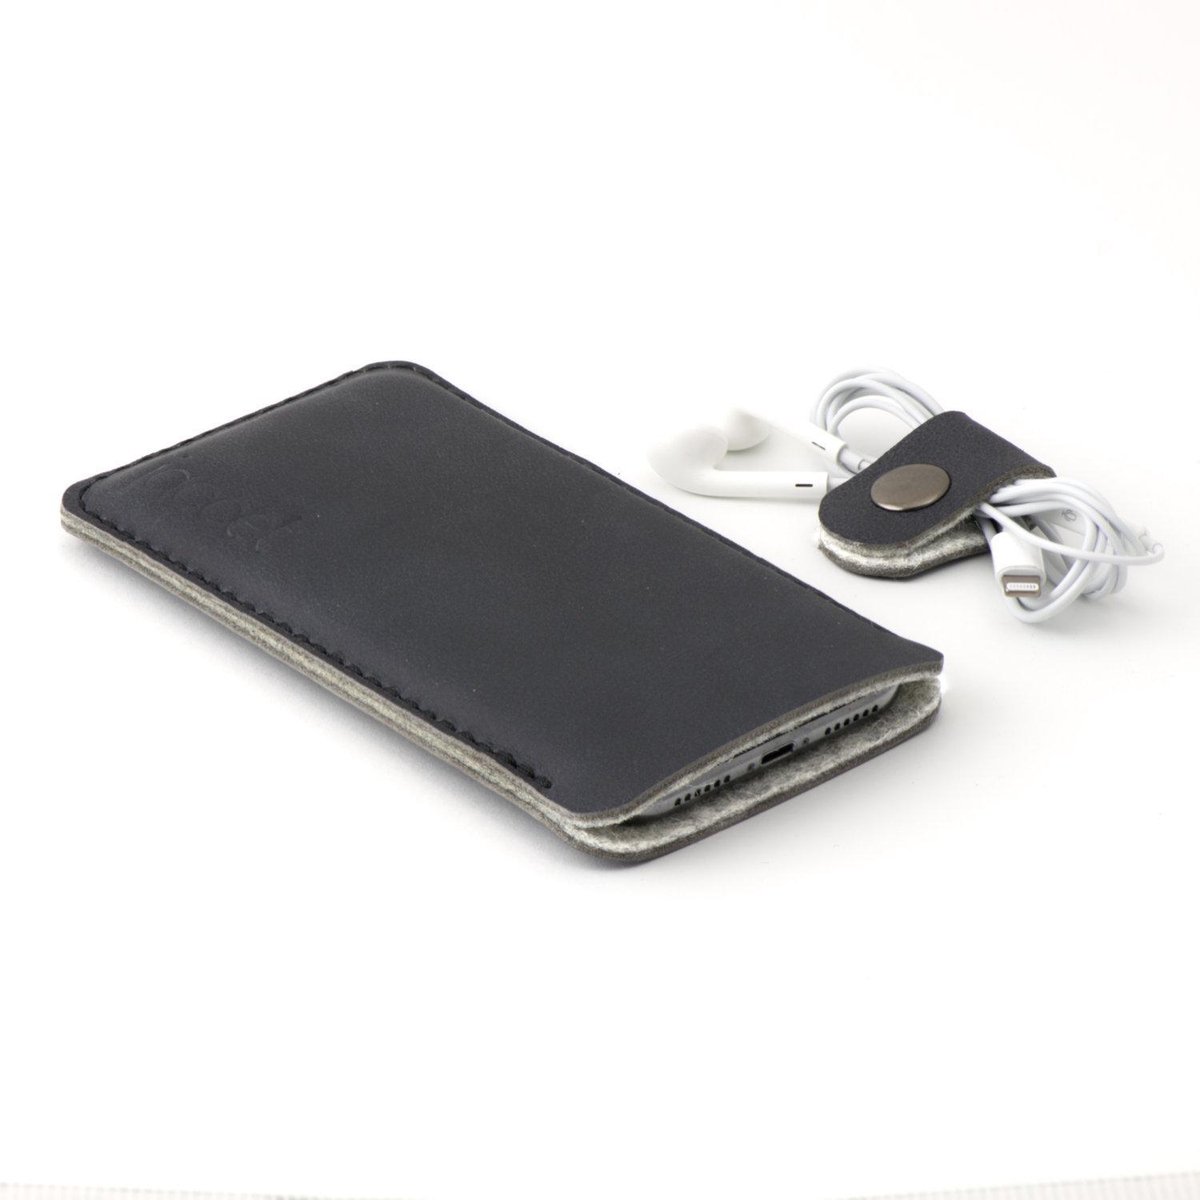 JACCET lederen Galaxy Z Fold 3 sleeve - antraciet/zwart leer met grijs wolvilt - 100% Handmade